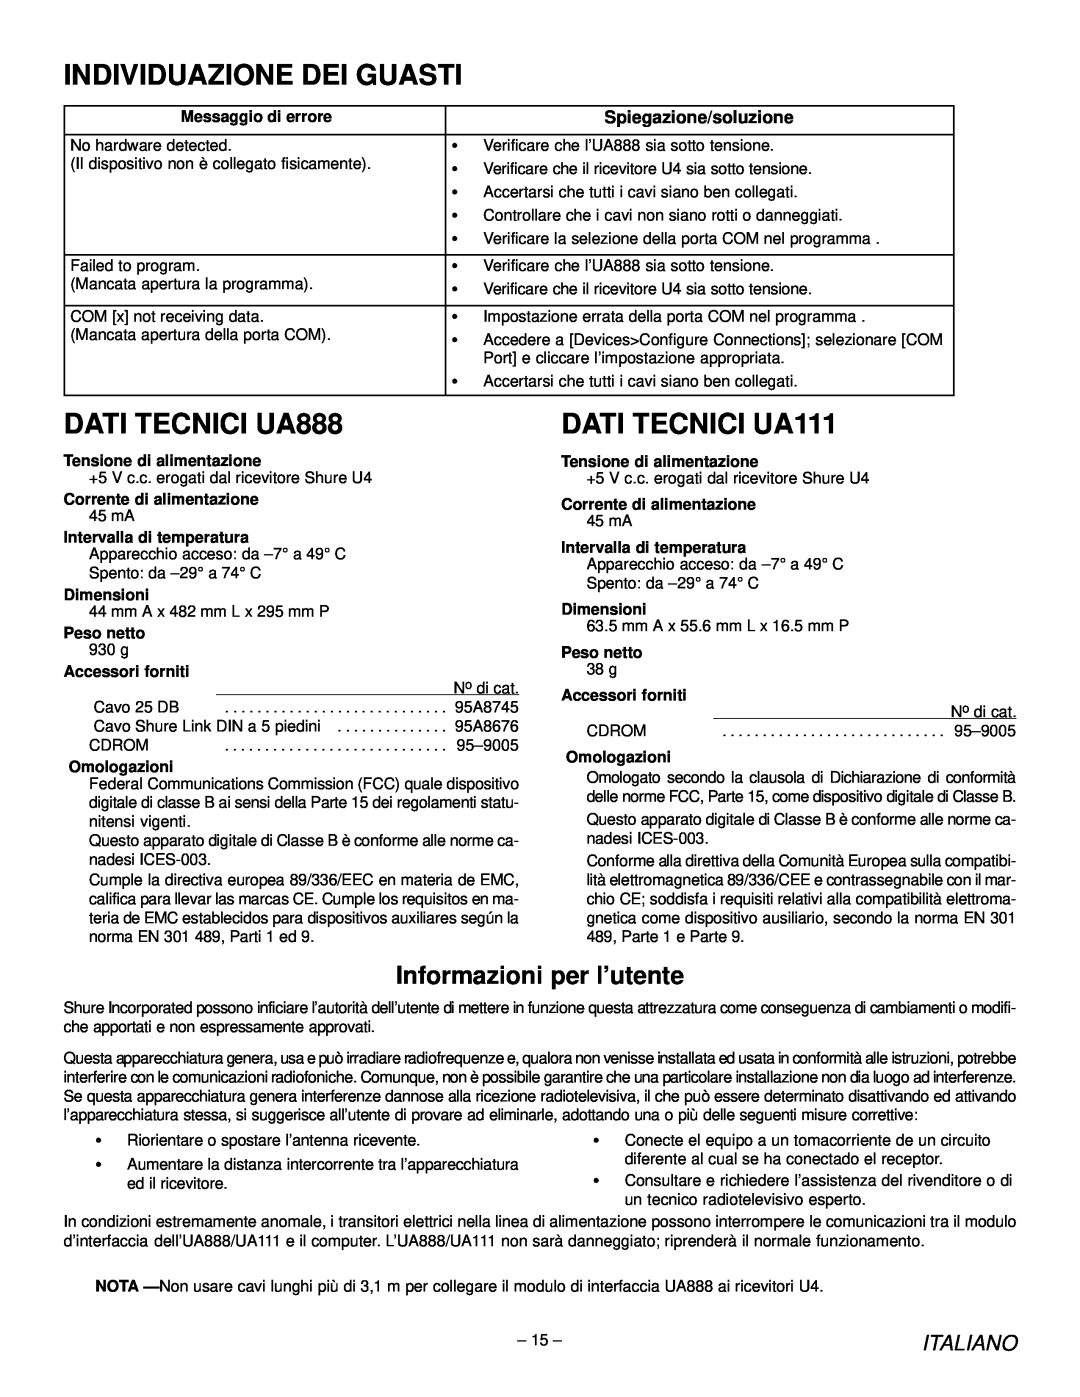 Shure manual Individuazione Dei Guasti, DATI TECNICI UA888, DATI TECNICI UA111, Informazioni per l’utente, Italiano 